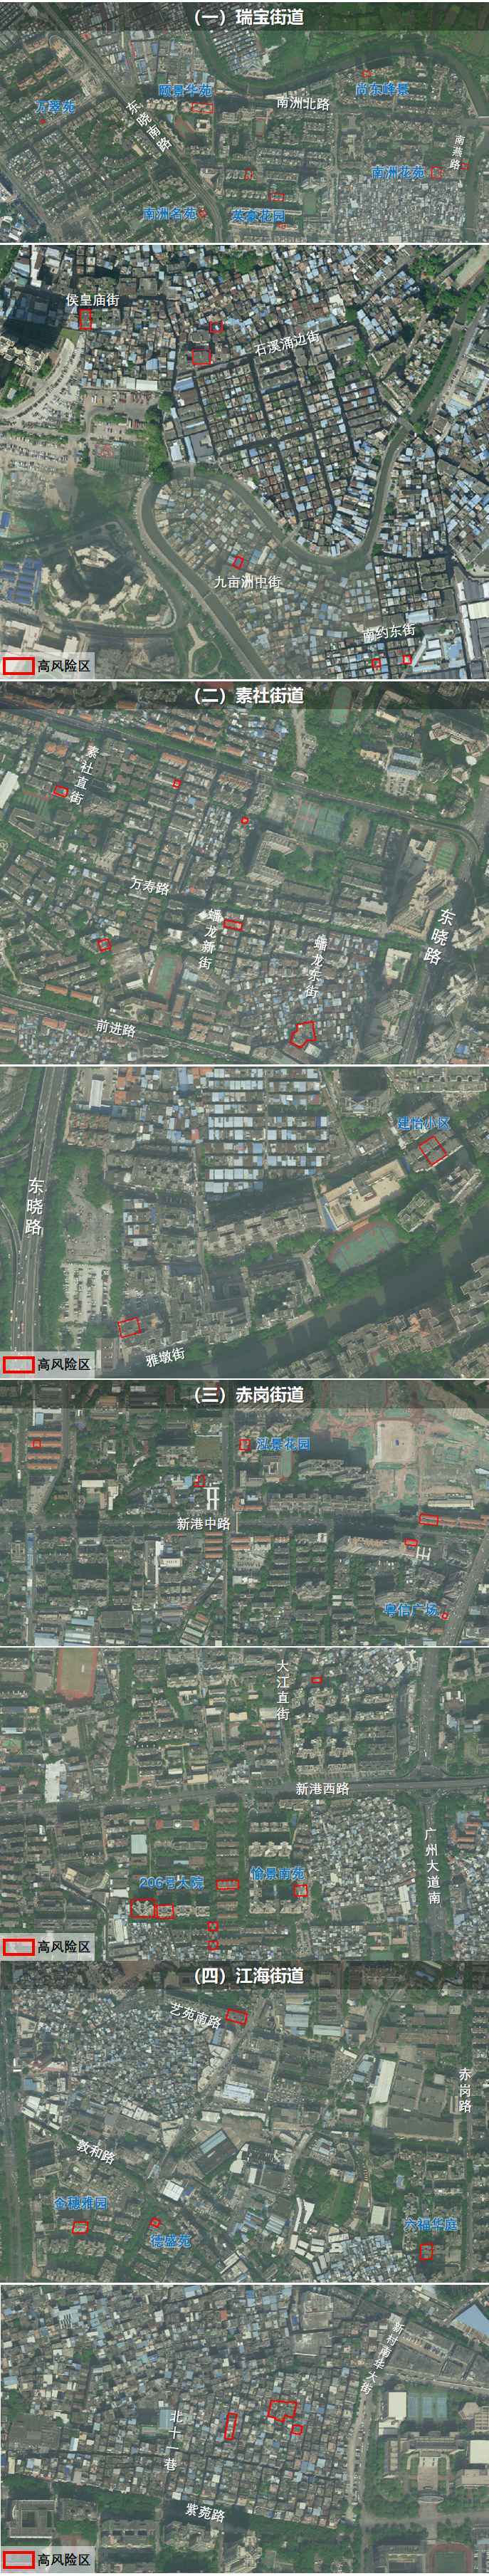 广州海珠区在瑞宝街道、素社街道、赤岗街道、江海街道划定高风险区